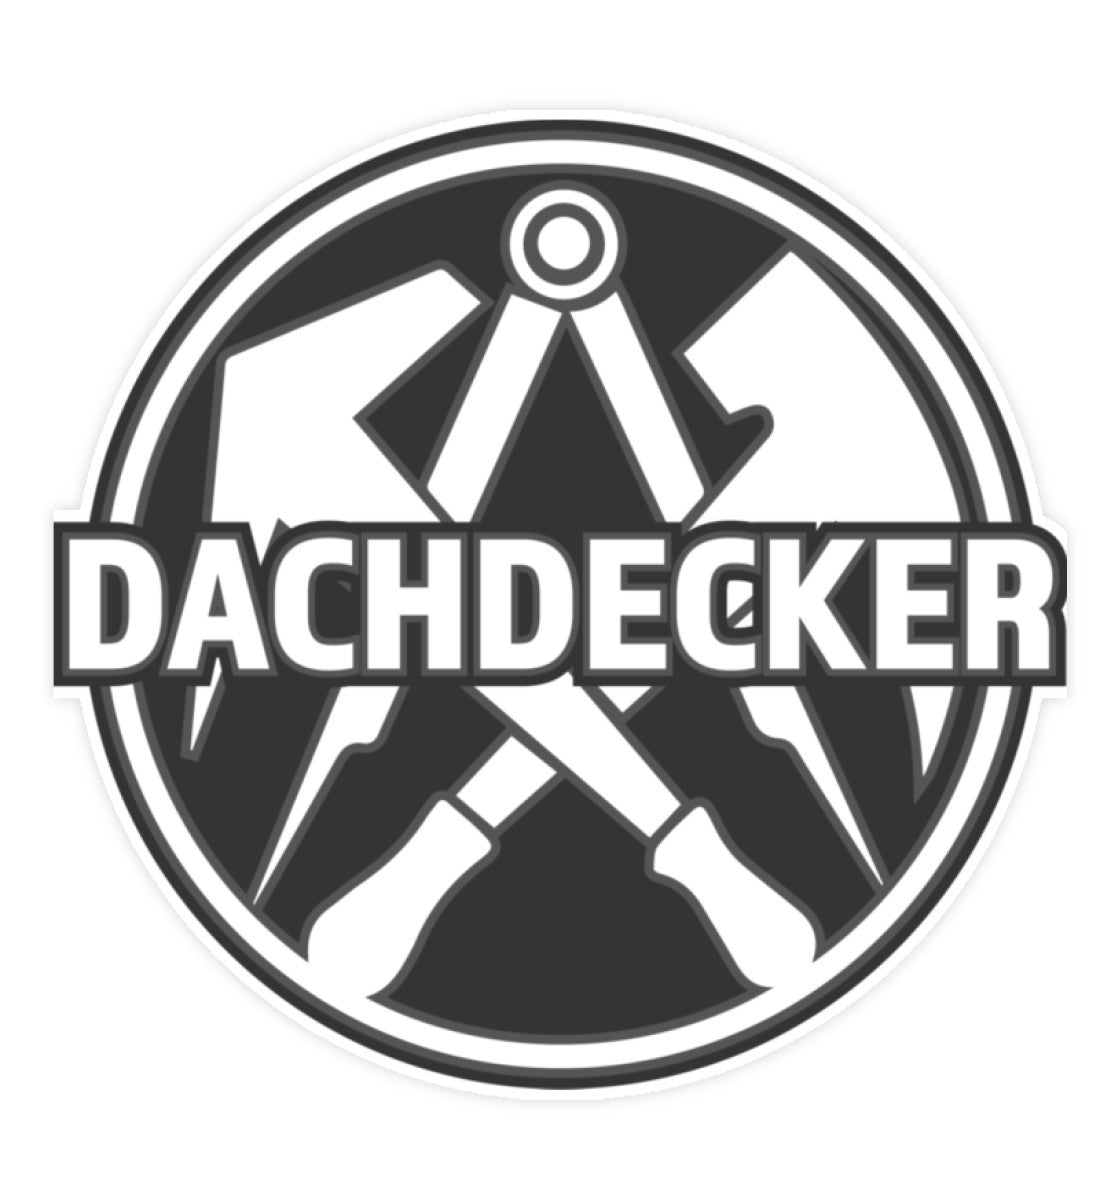 Dachdecker - Sticker ( 5 x 5 cm) - Rooferking